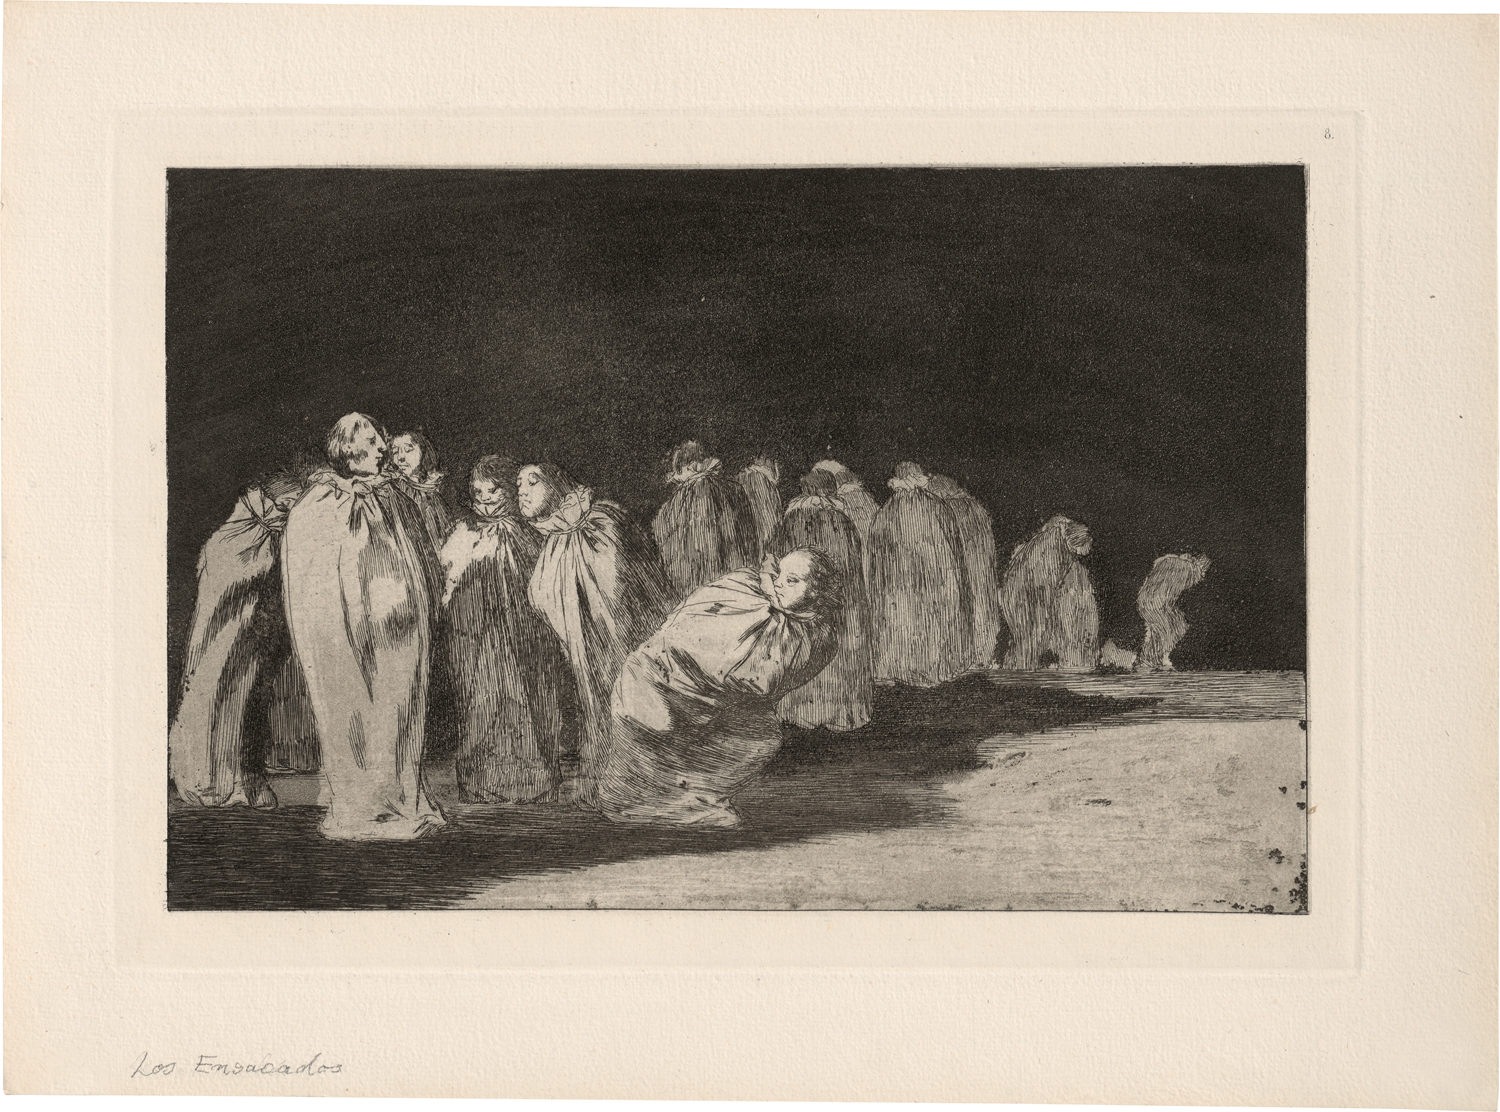 Los ensacados (So el sayal, hay al) by Francisco José de Goya y Lucientes